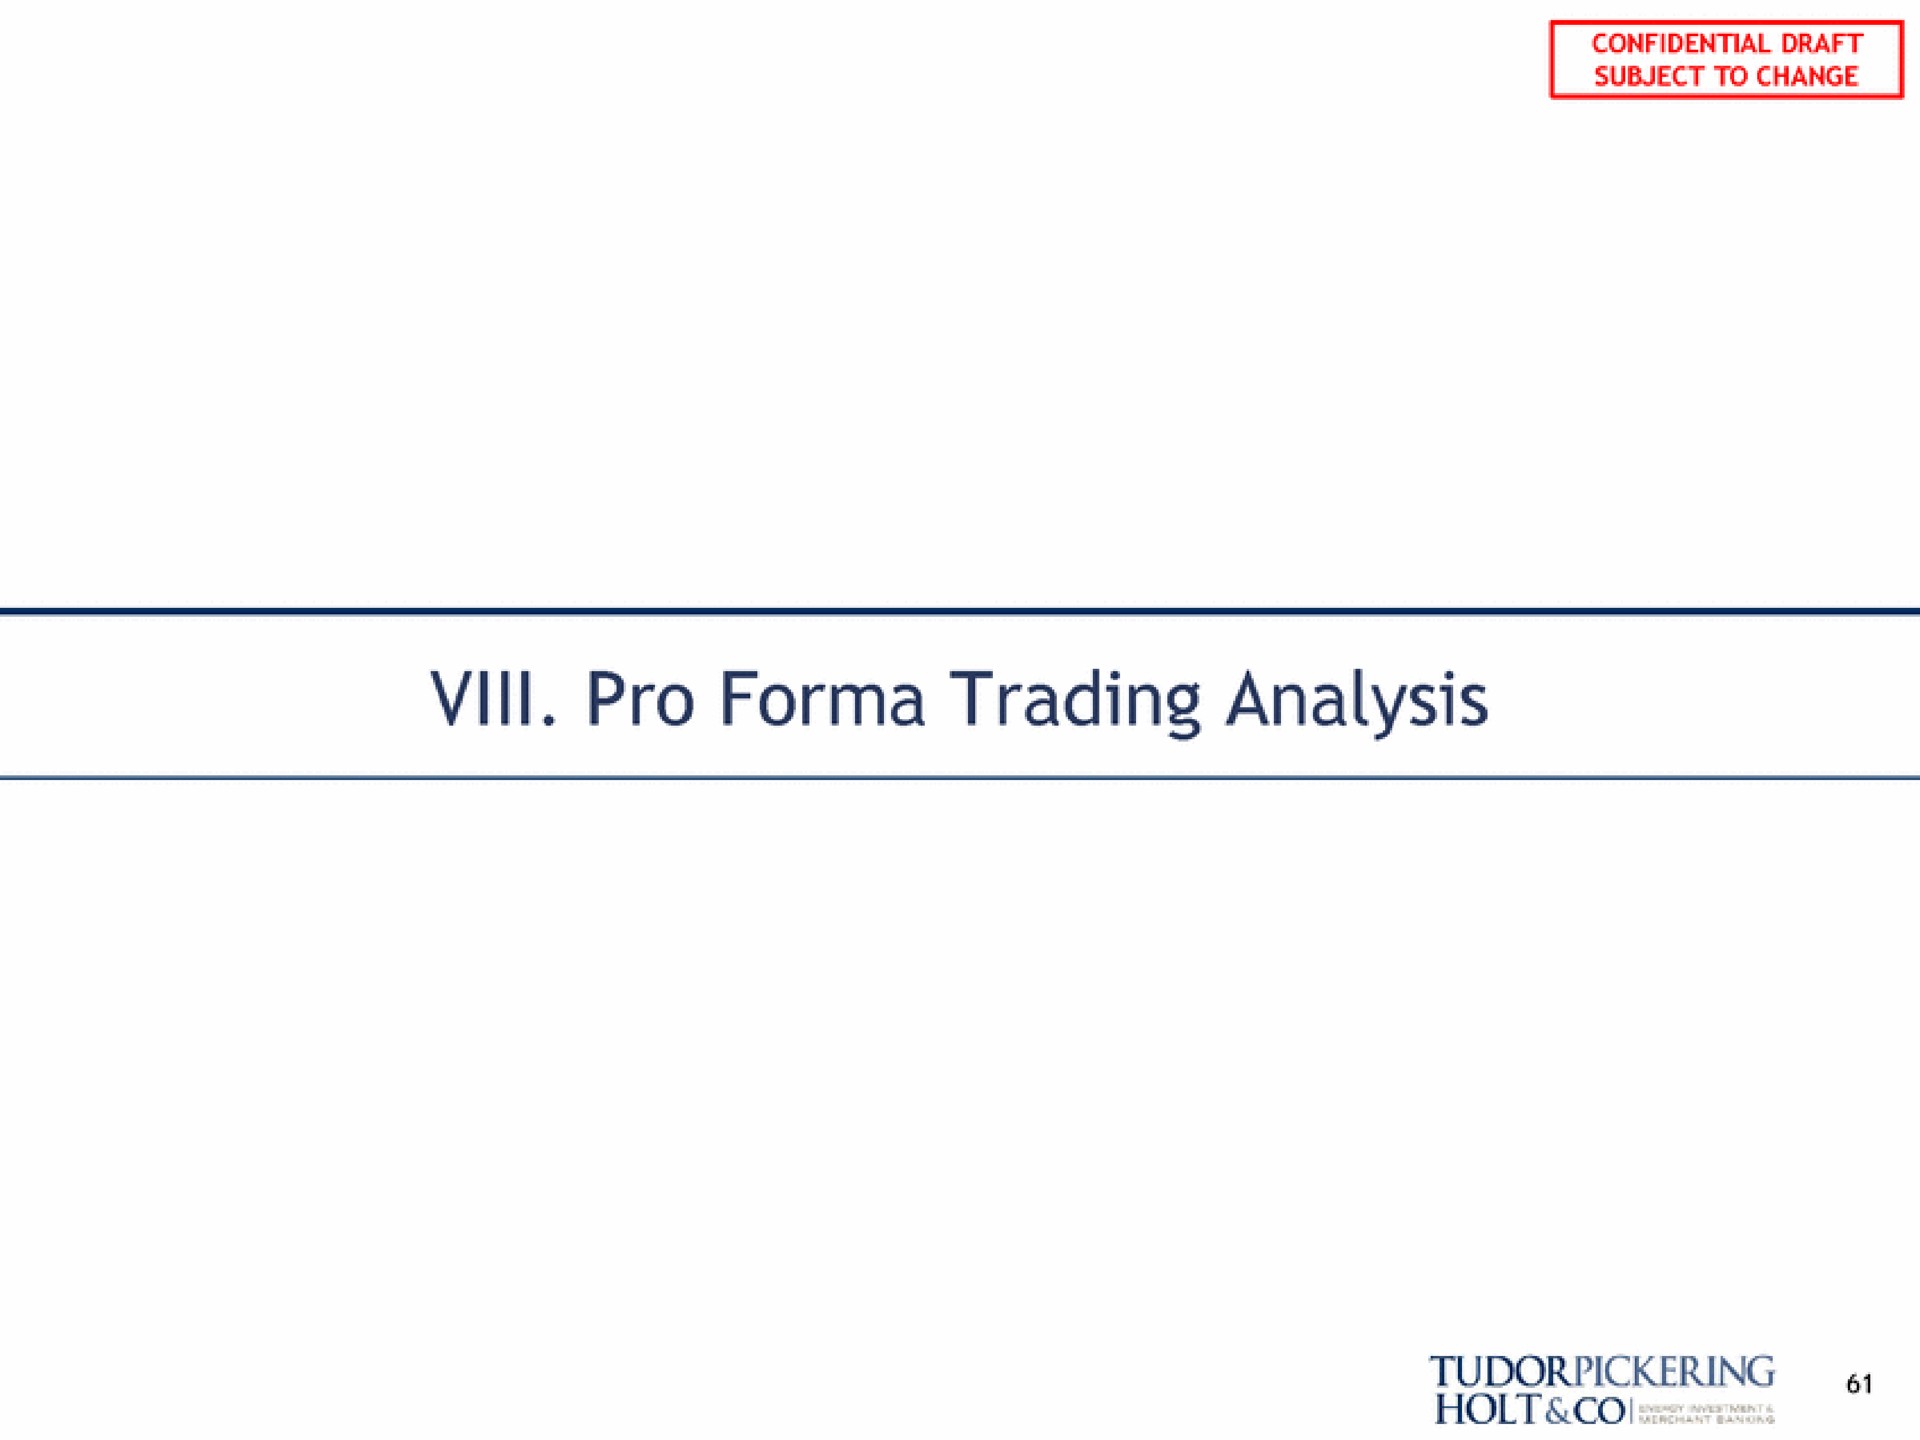 vill pro trading analysis | Tudor, Pickering, Holt & Co